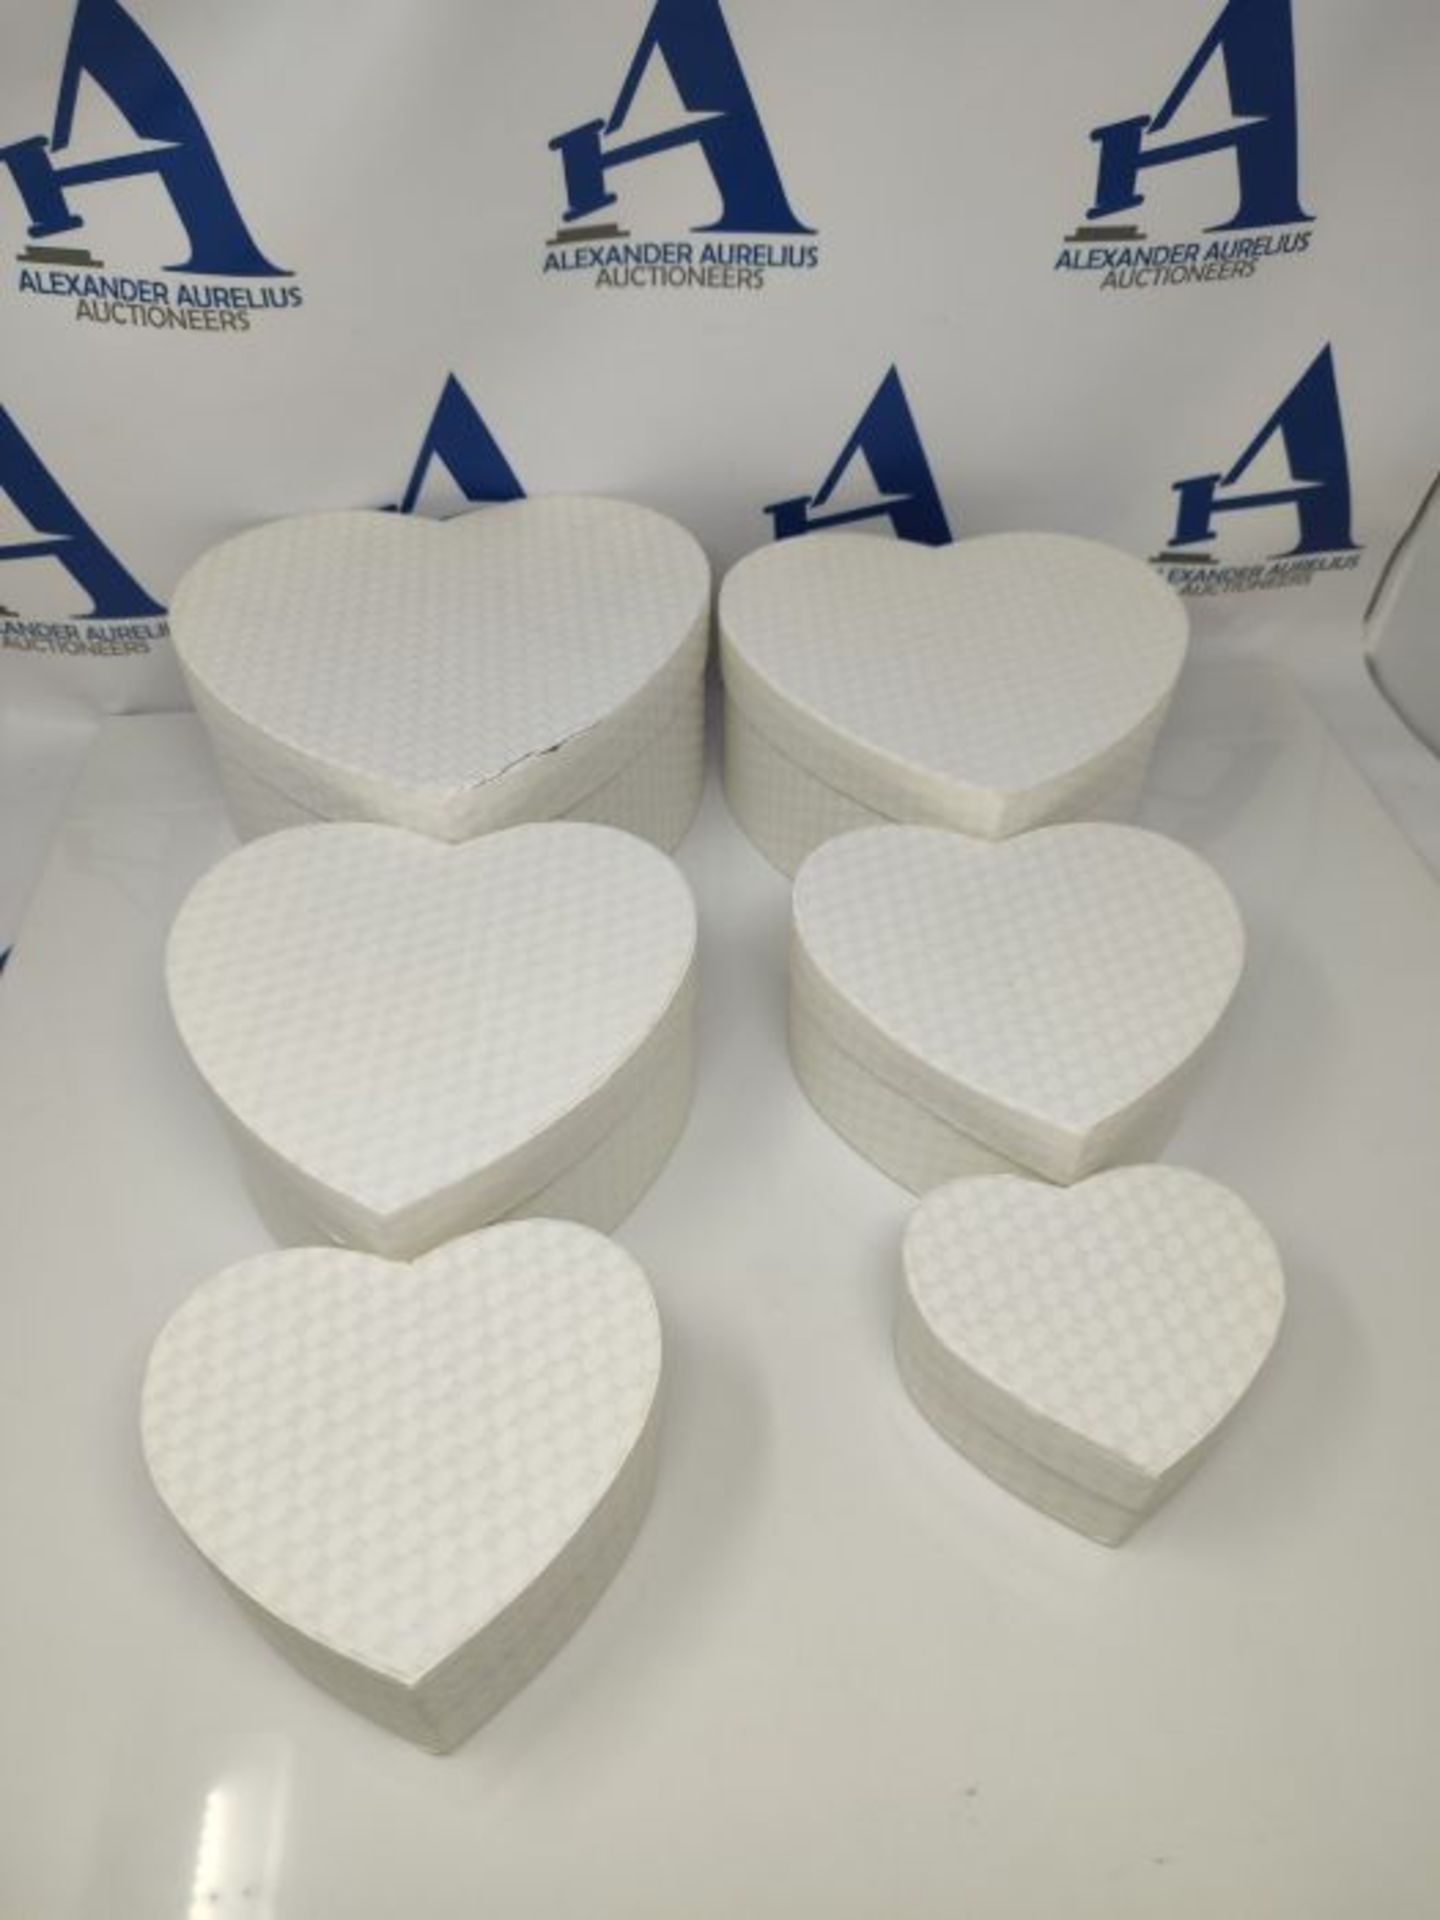 [CRACKED] Brandsseller Multipurpose Heart-Shaped Gift Box - Set of 6 - White - Image 2 of 2